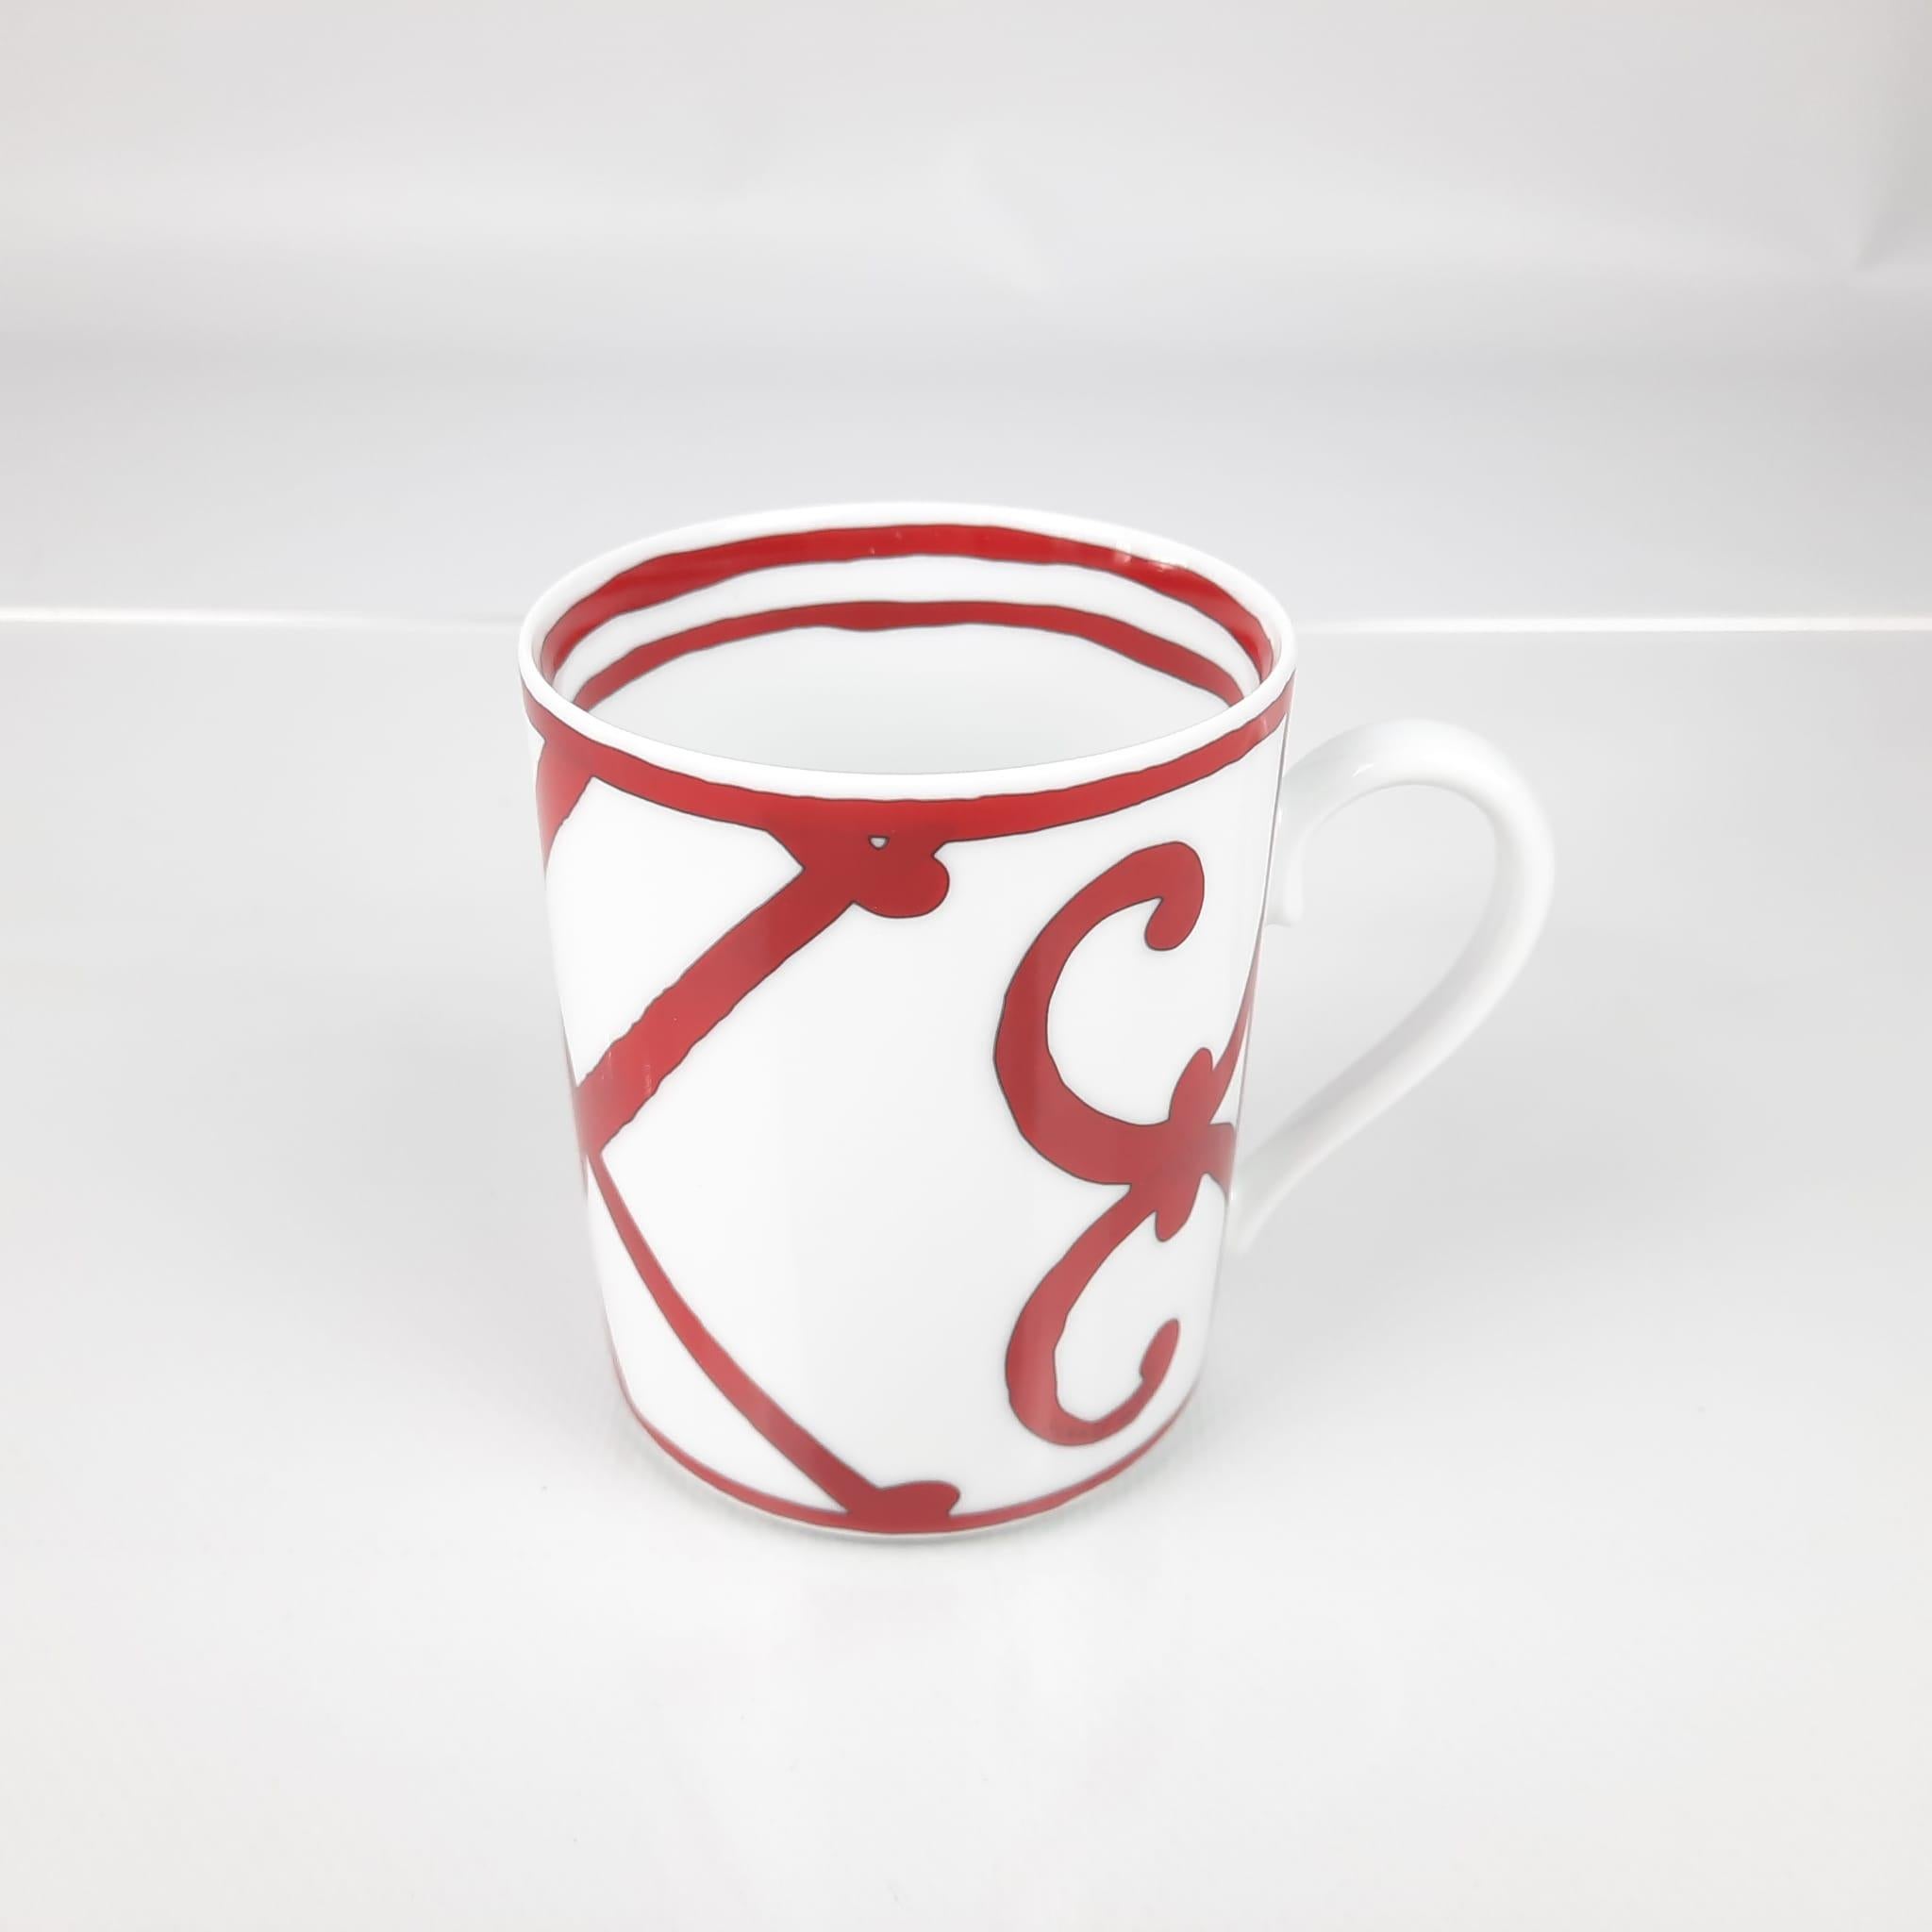 Mug n°2 in porcelain
Capacity: 30 cl